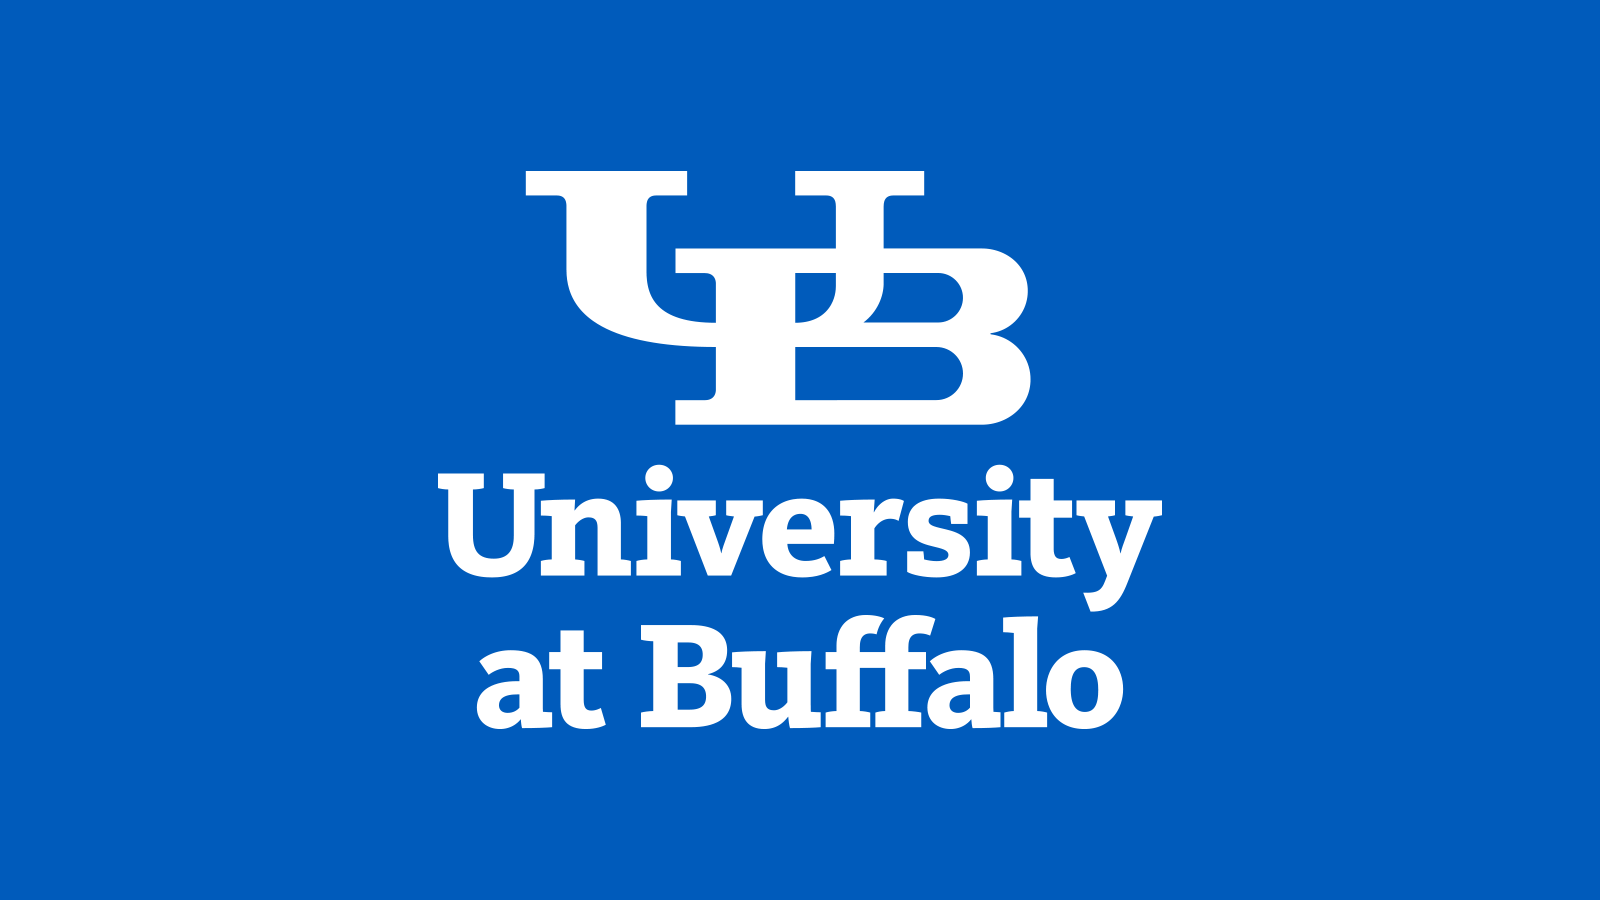 www.buffalo.edu